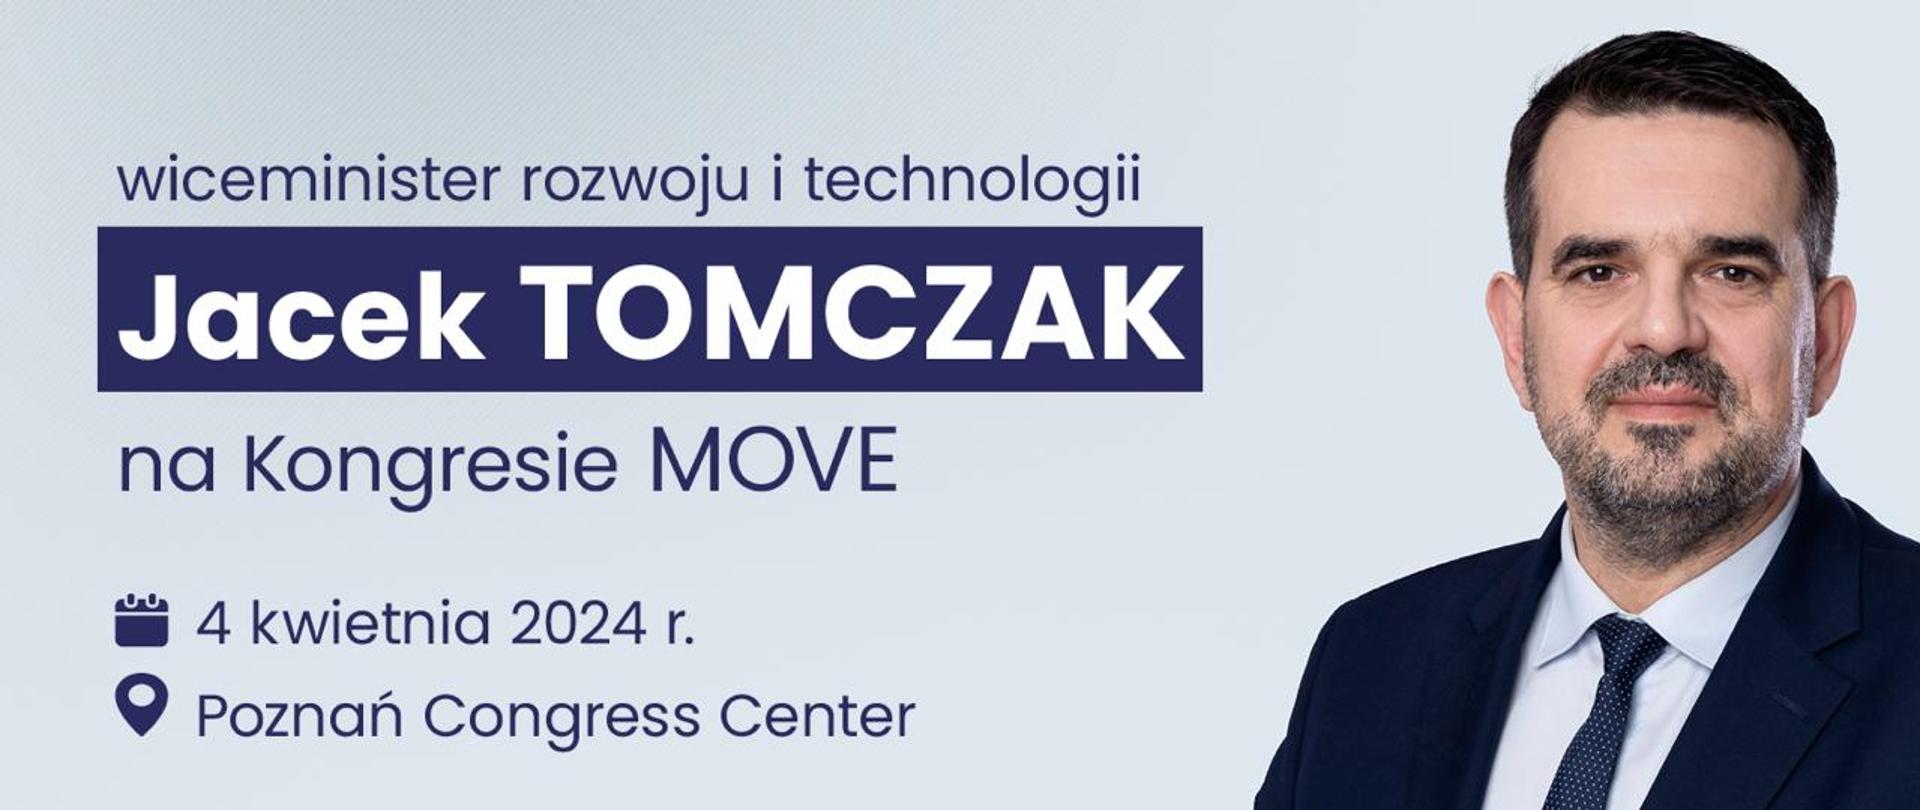 zapowiedź udziału wiceministra Jacka Tomczaka na kongresie Move